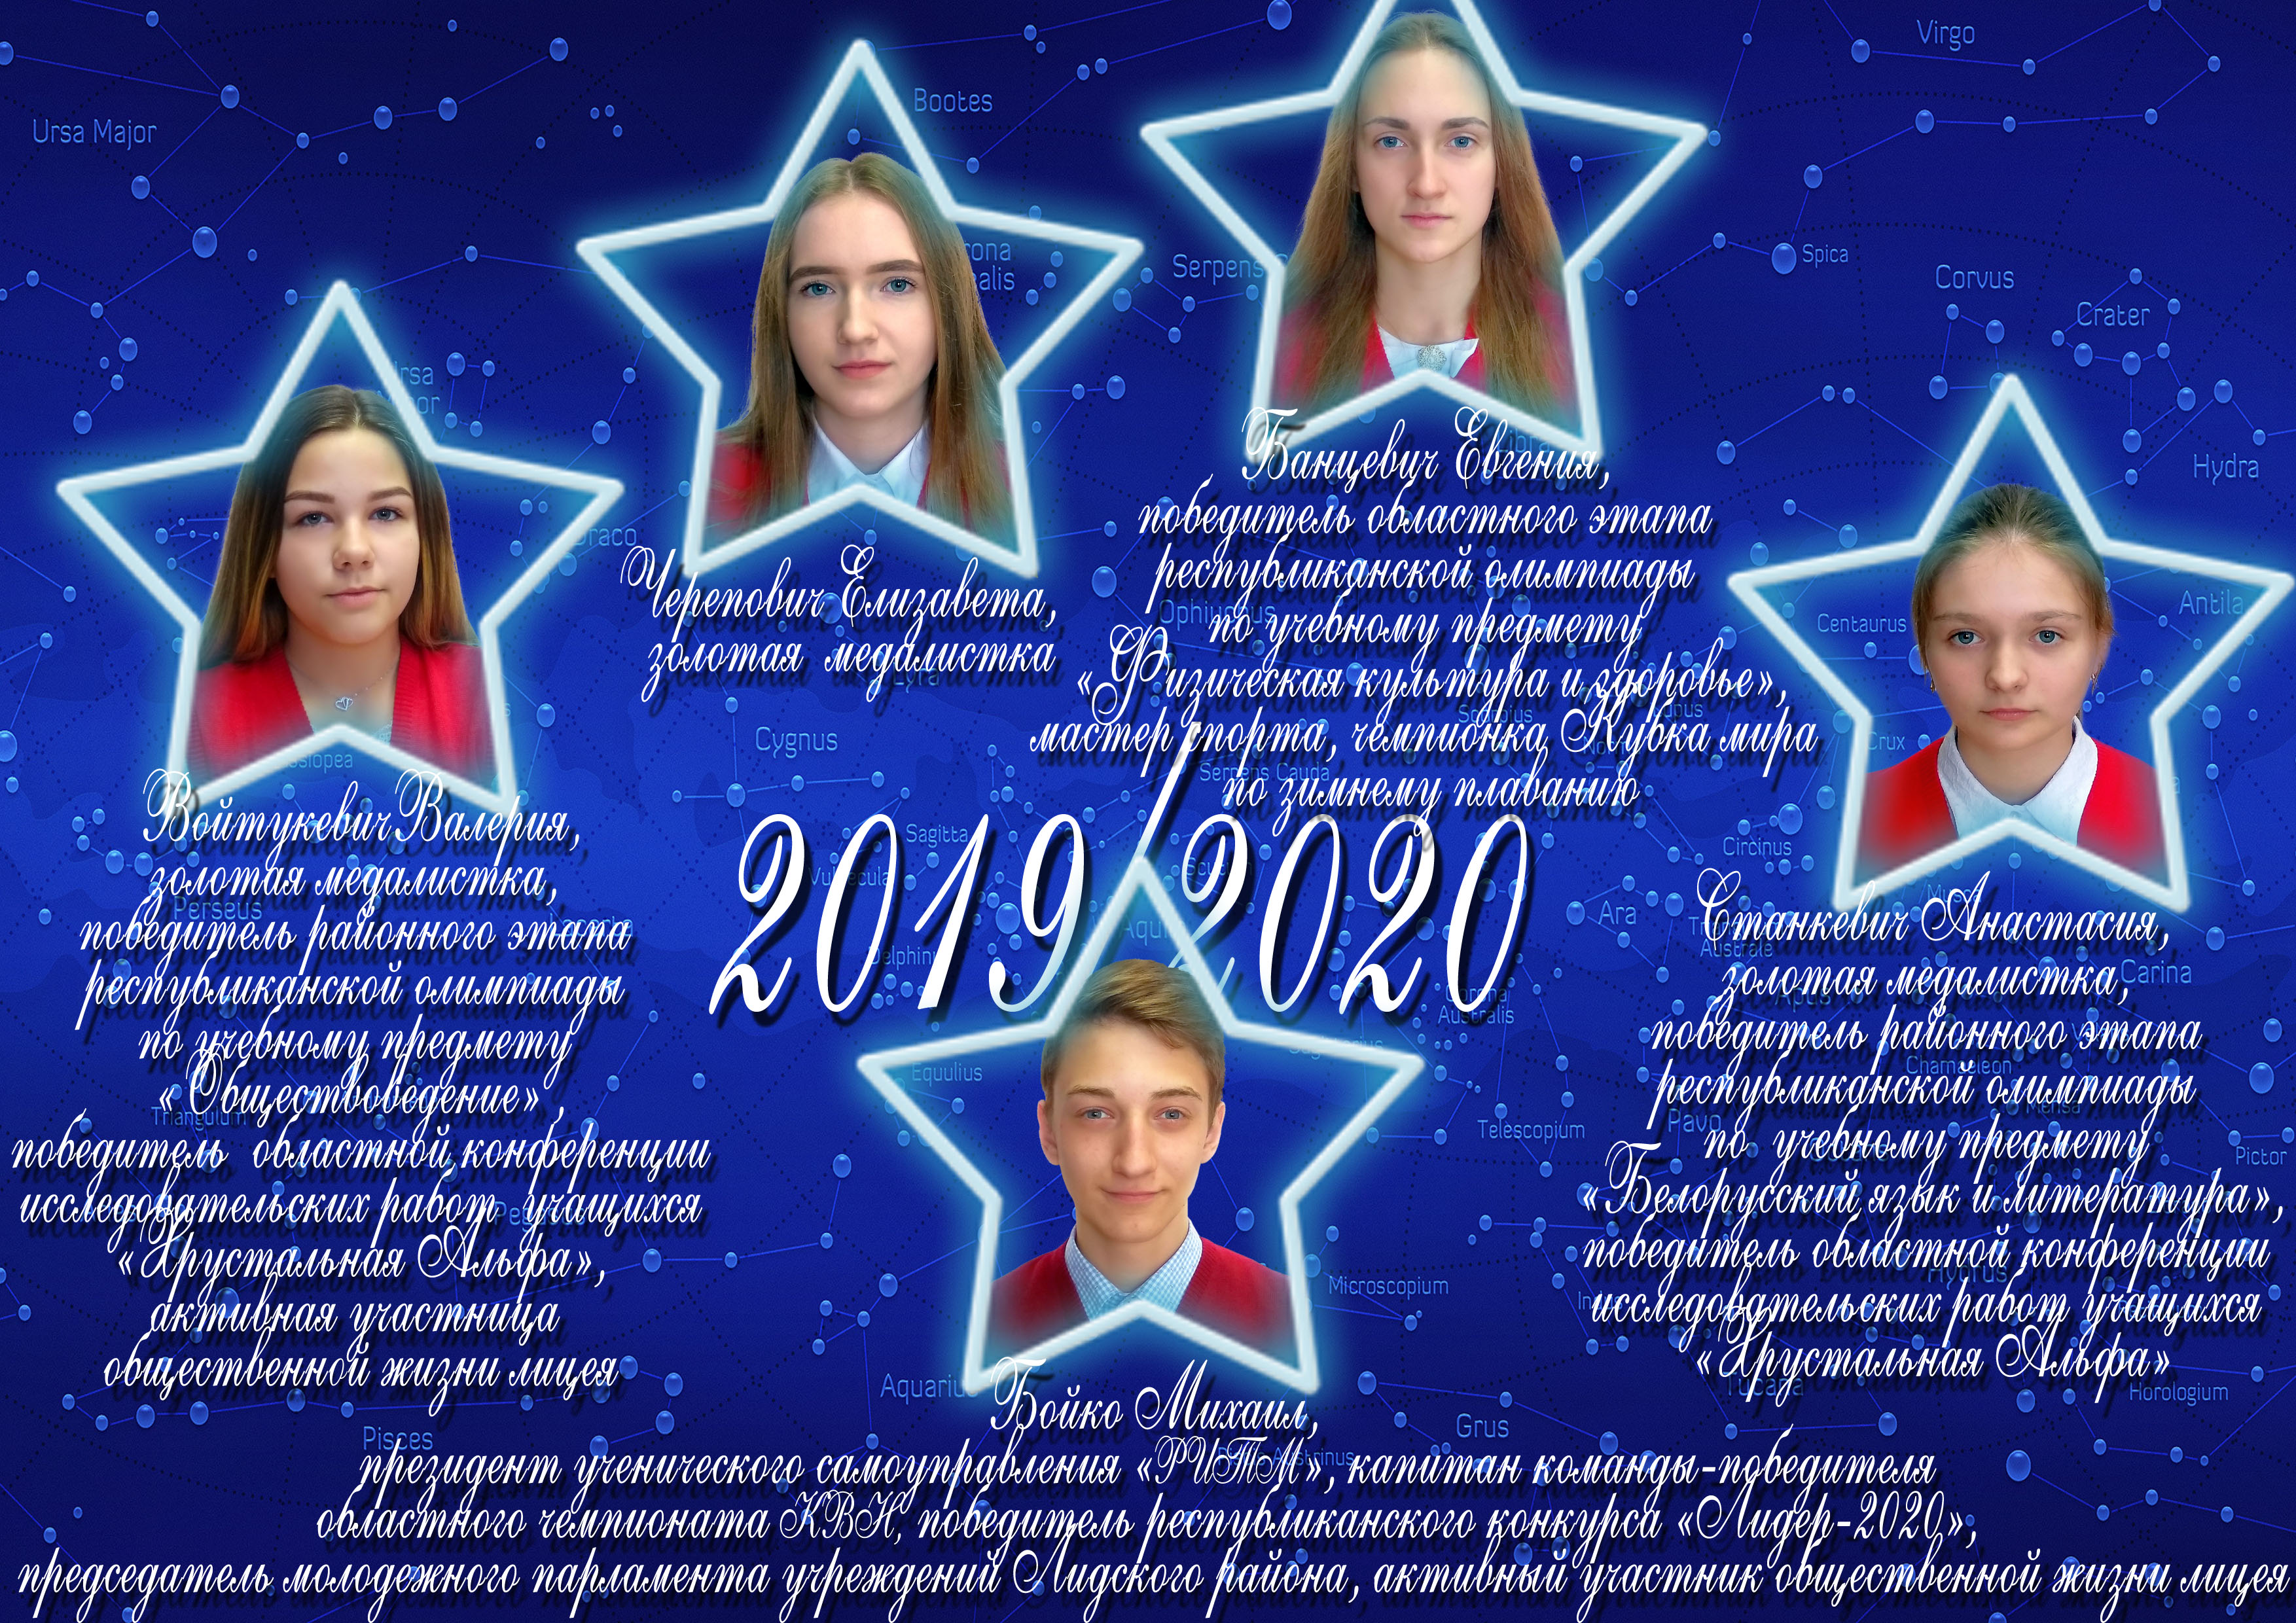 Созвездие лицея 2019/2020 учебного года